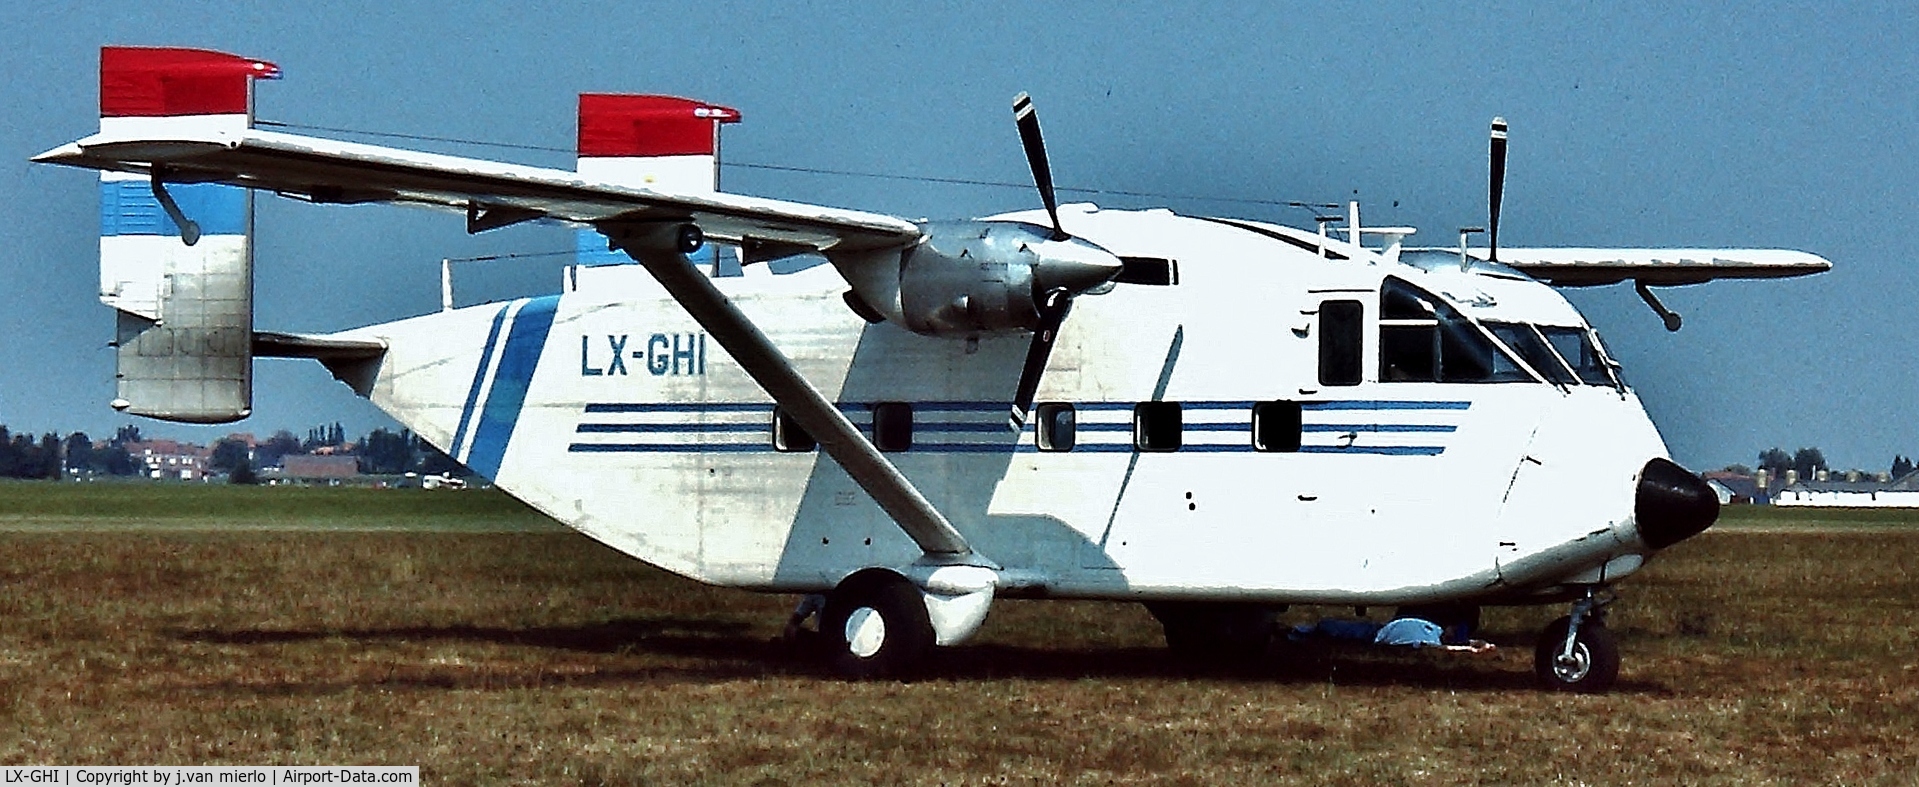 LX-GHI, 1971 Short SC-7 Skyvan 3M-400 C/N SH.1890, Moorsele air show '95